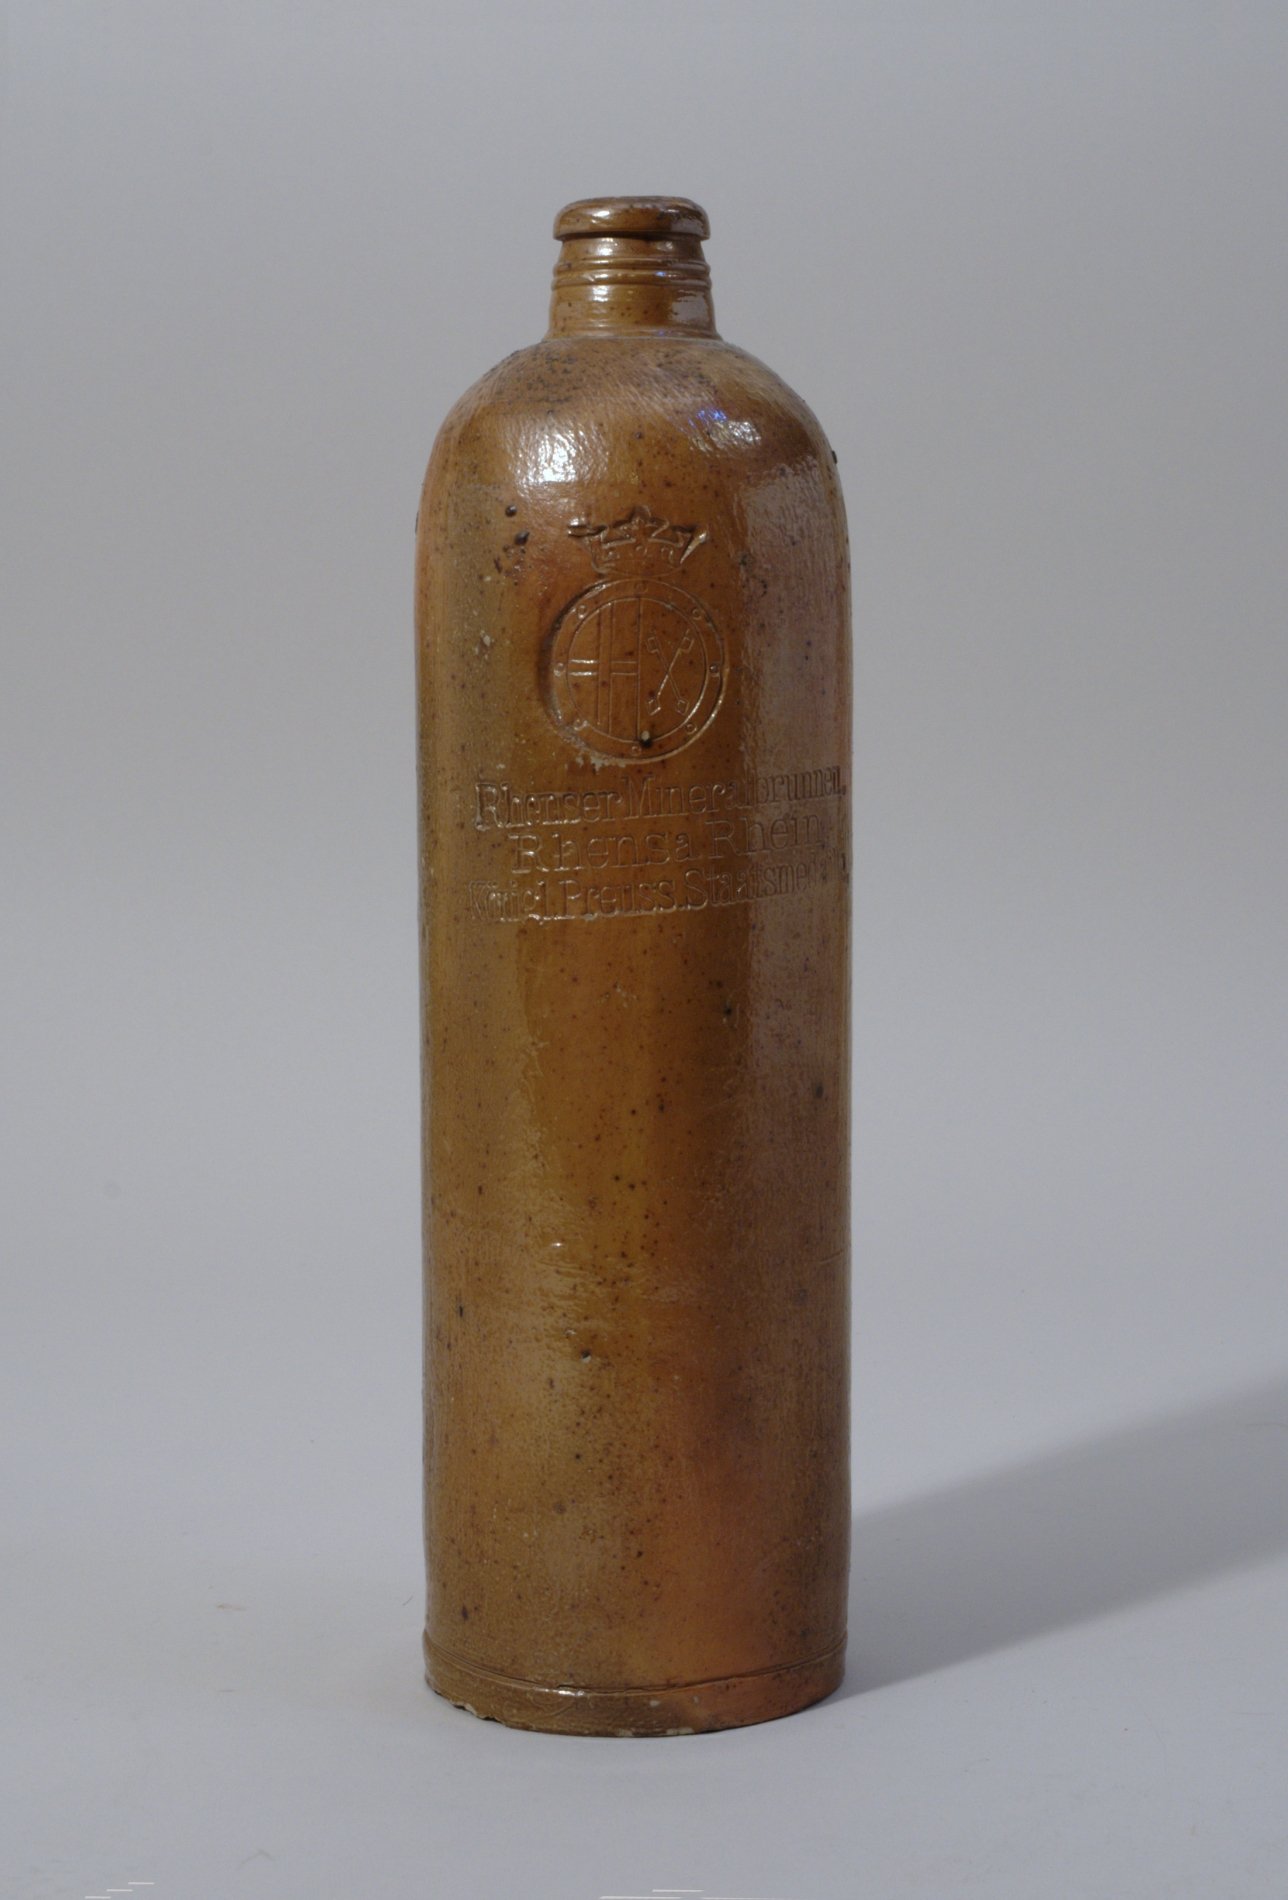 Mineralwasserflasche "Rhenser Mineralbrunnen" (Stiftung Domäne Dahlem - Landgut und Museum, Weiternutzung nur mit Genehmigung des Museums CC BY-NC-SA)